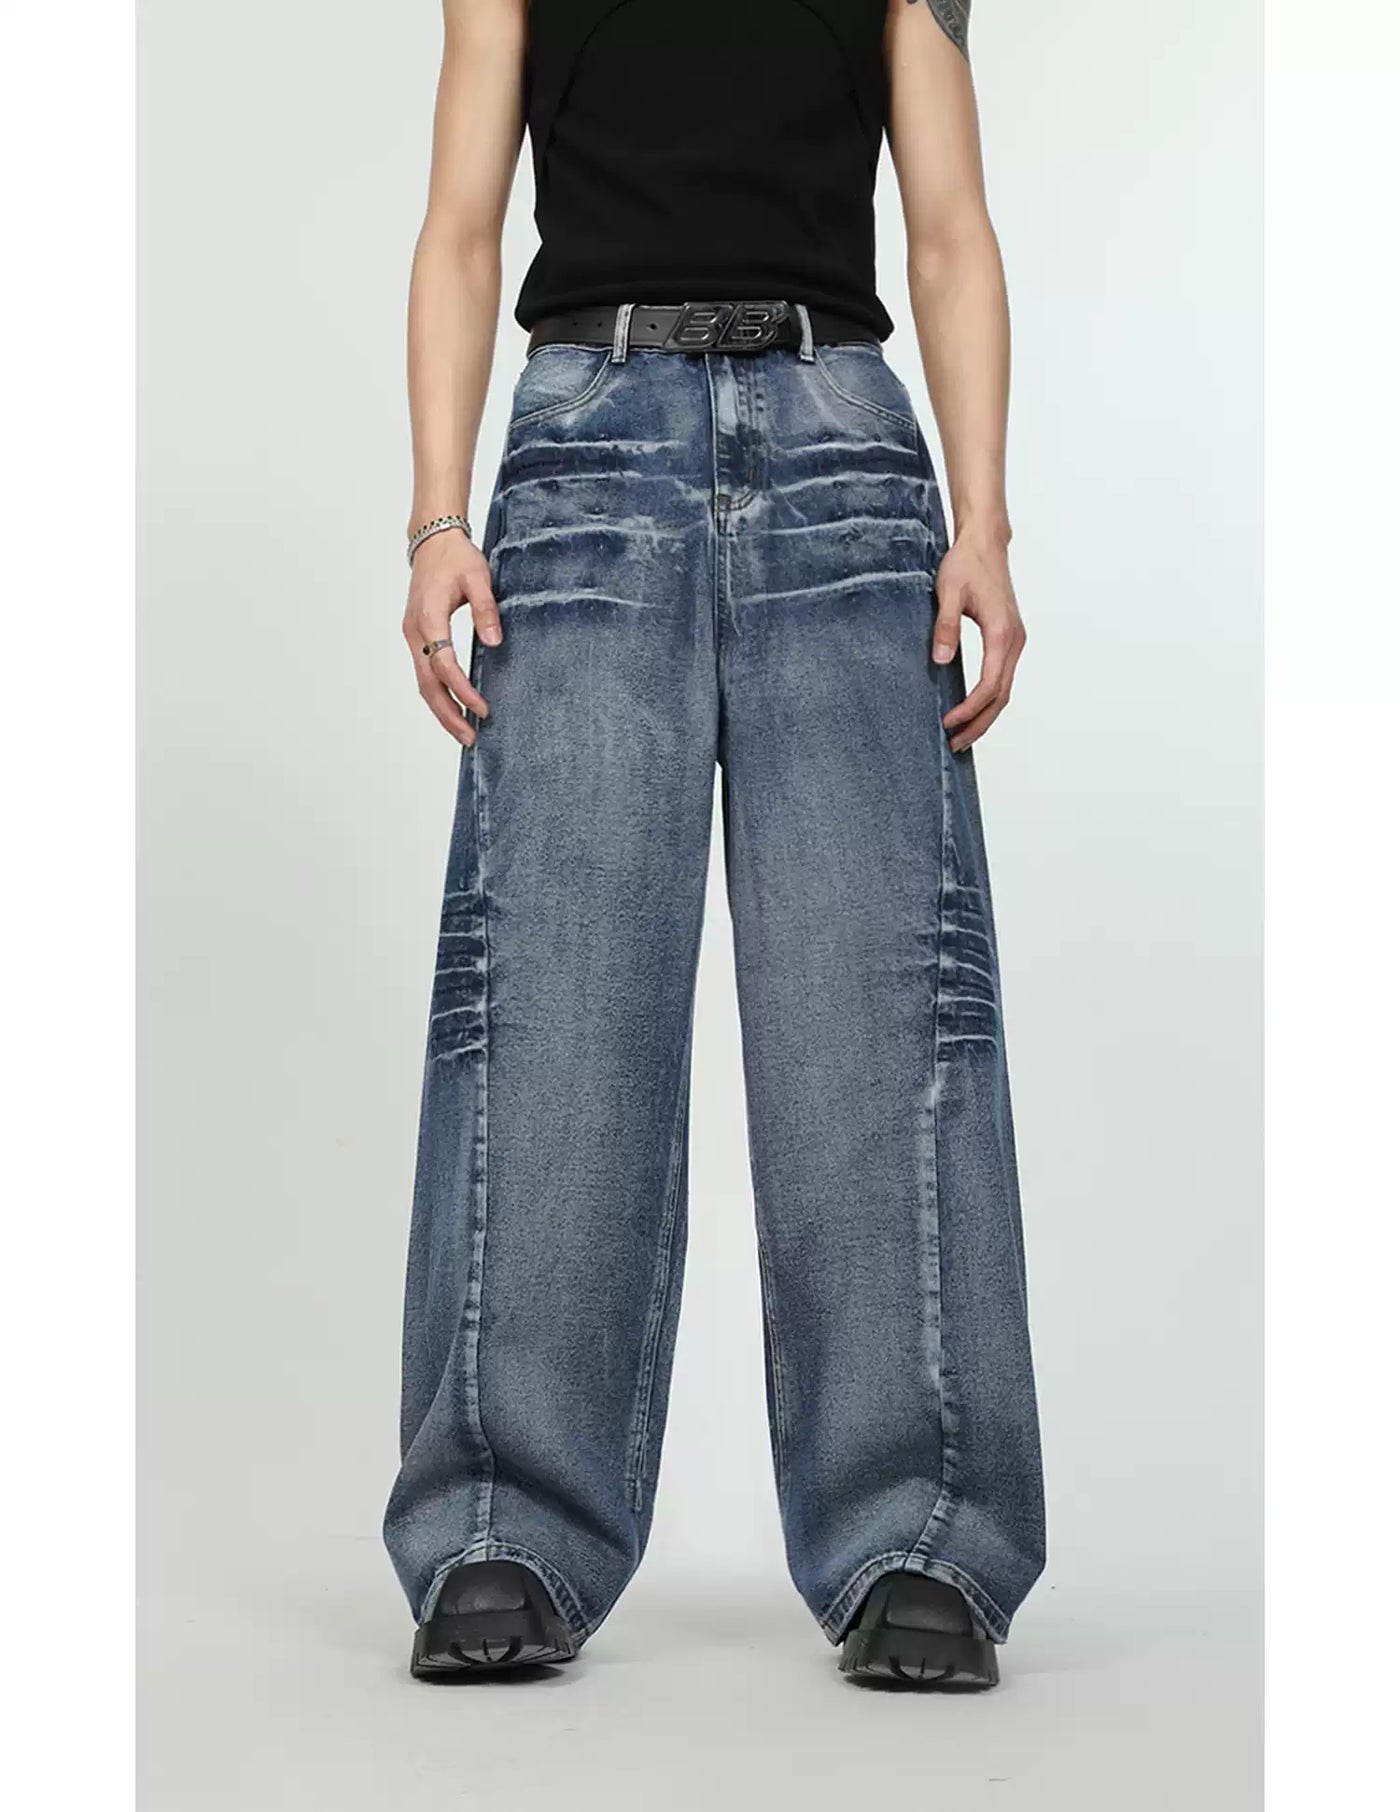 Washed Denim Jacket & Wide Jeans Set Korean Street Fashion Clothing Set By Turn Tide Shop Online at OH Vault